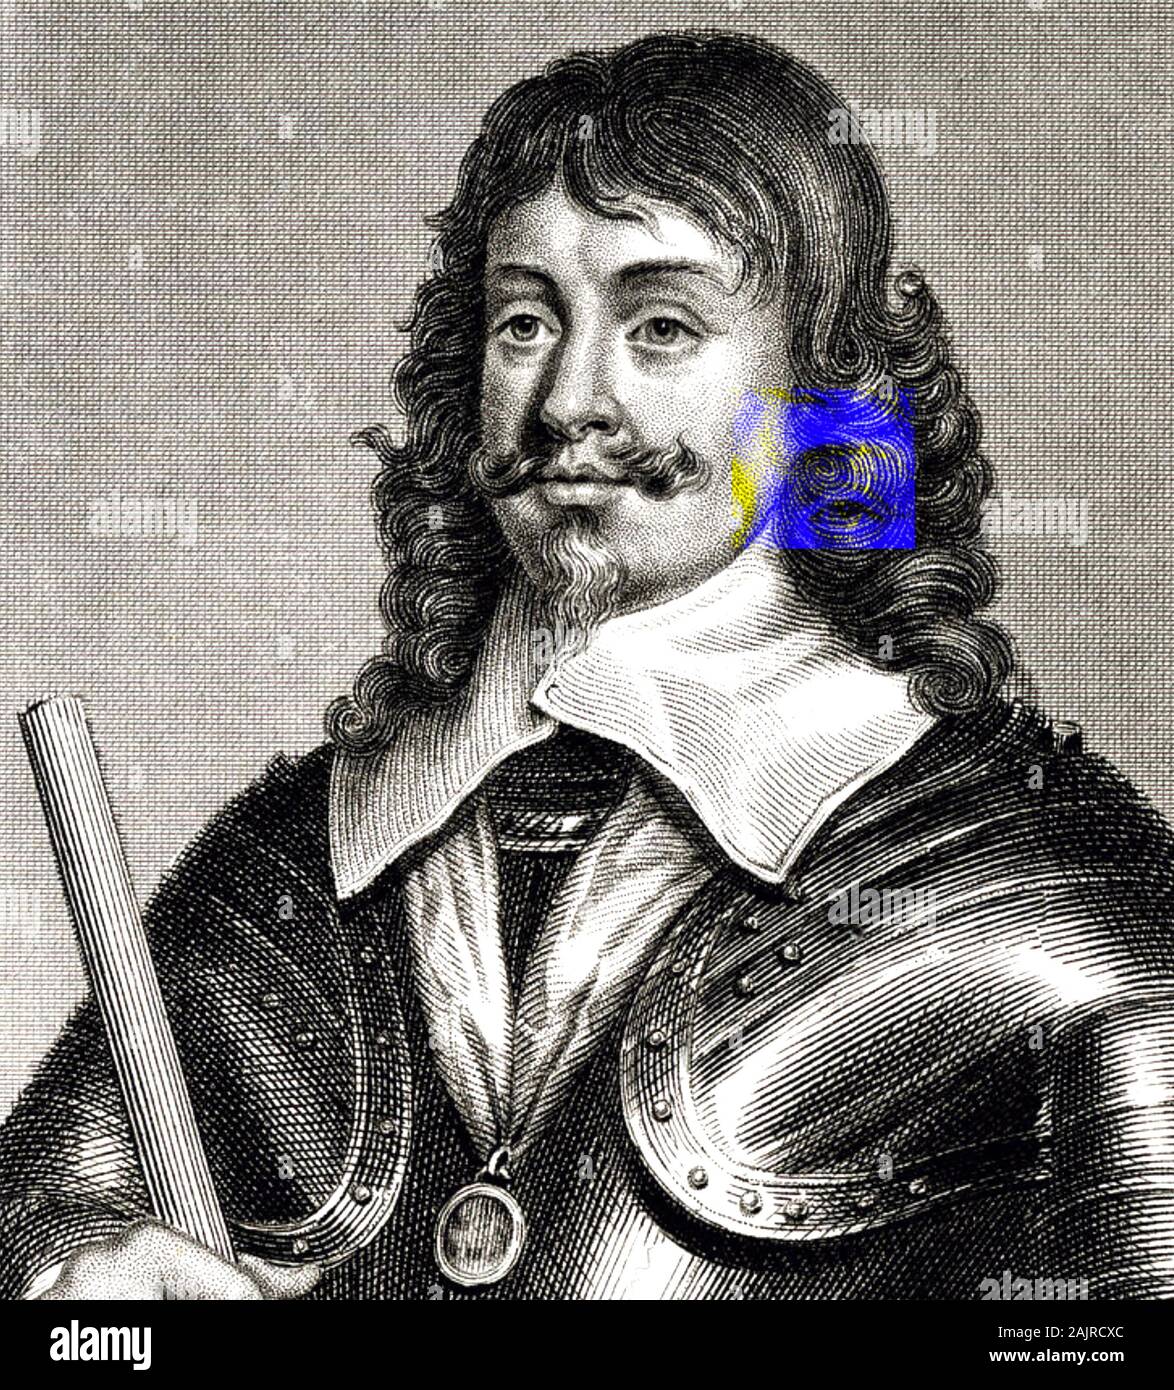 JAMES HAMILTON, 1 Duc d'Hamilton (1606-1649), chef militaire écossais Banque D'Images